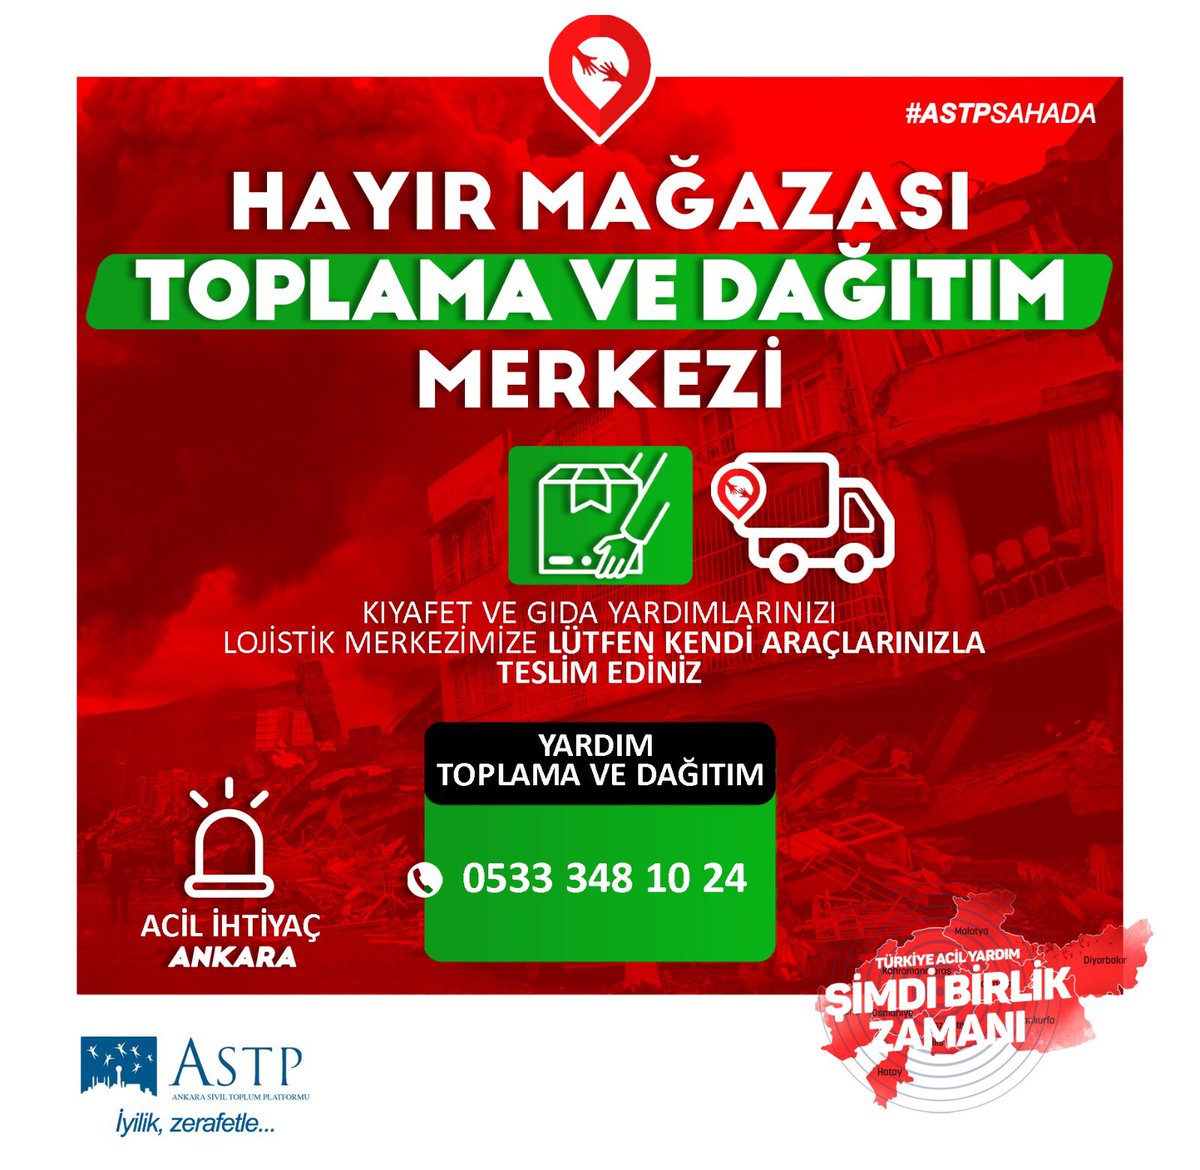 Ankara’da depremzede aileler için yardım toparlama ve dağıtımı yapan lojistik merkezi. 

Organizasyon ve hareket kabiliyeti yüksek Yardım kuruluşlarına yardımda bulunalım. #AFAD #Kızılay #Umke #İHH #Denizfeneri #Astp #Astpsahada